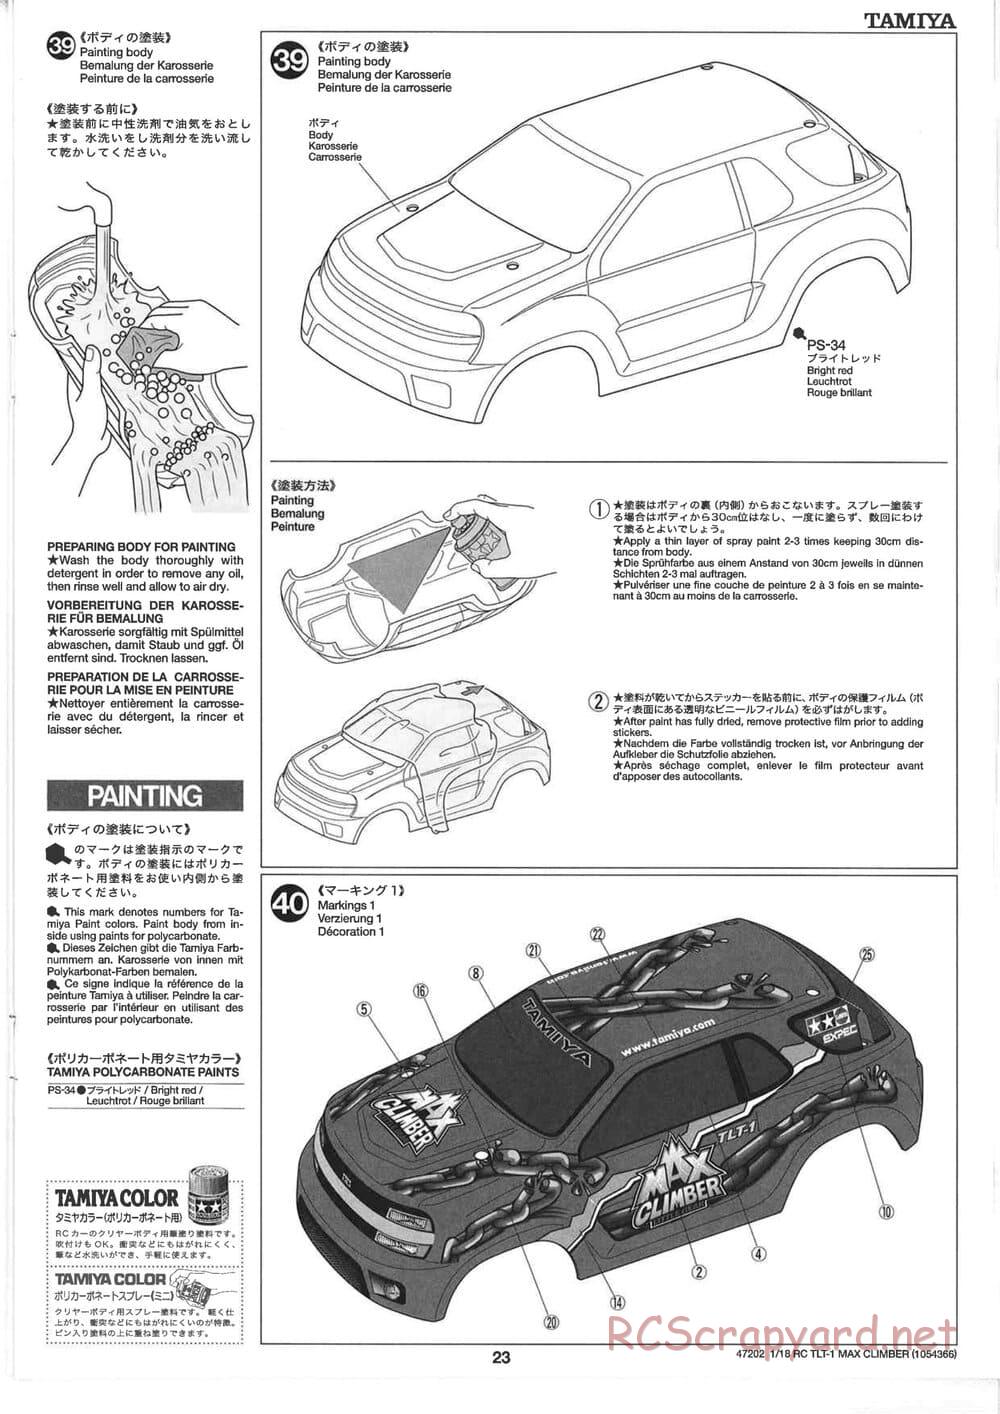 Tamiya - Max Climber - TLT-1 Chassis - Manual - Page 23